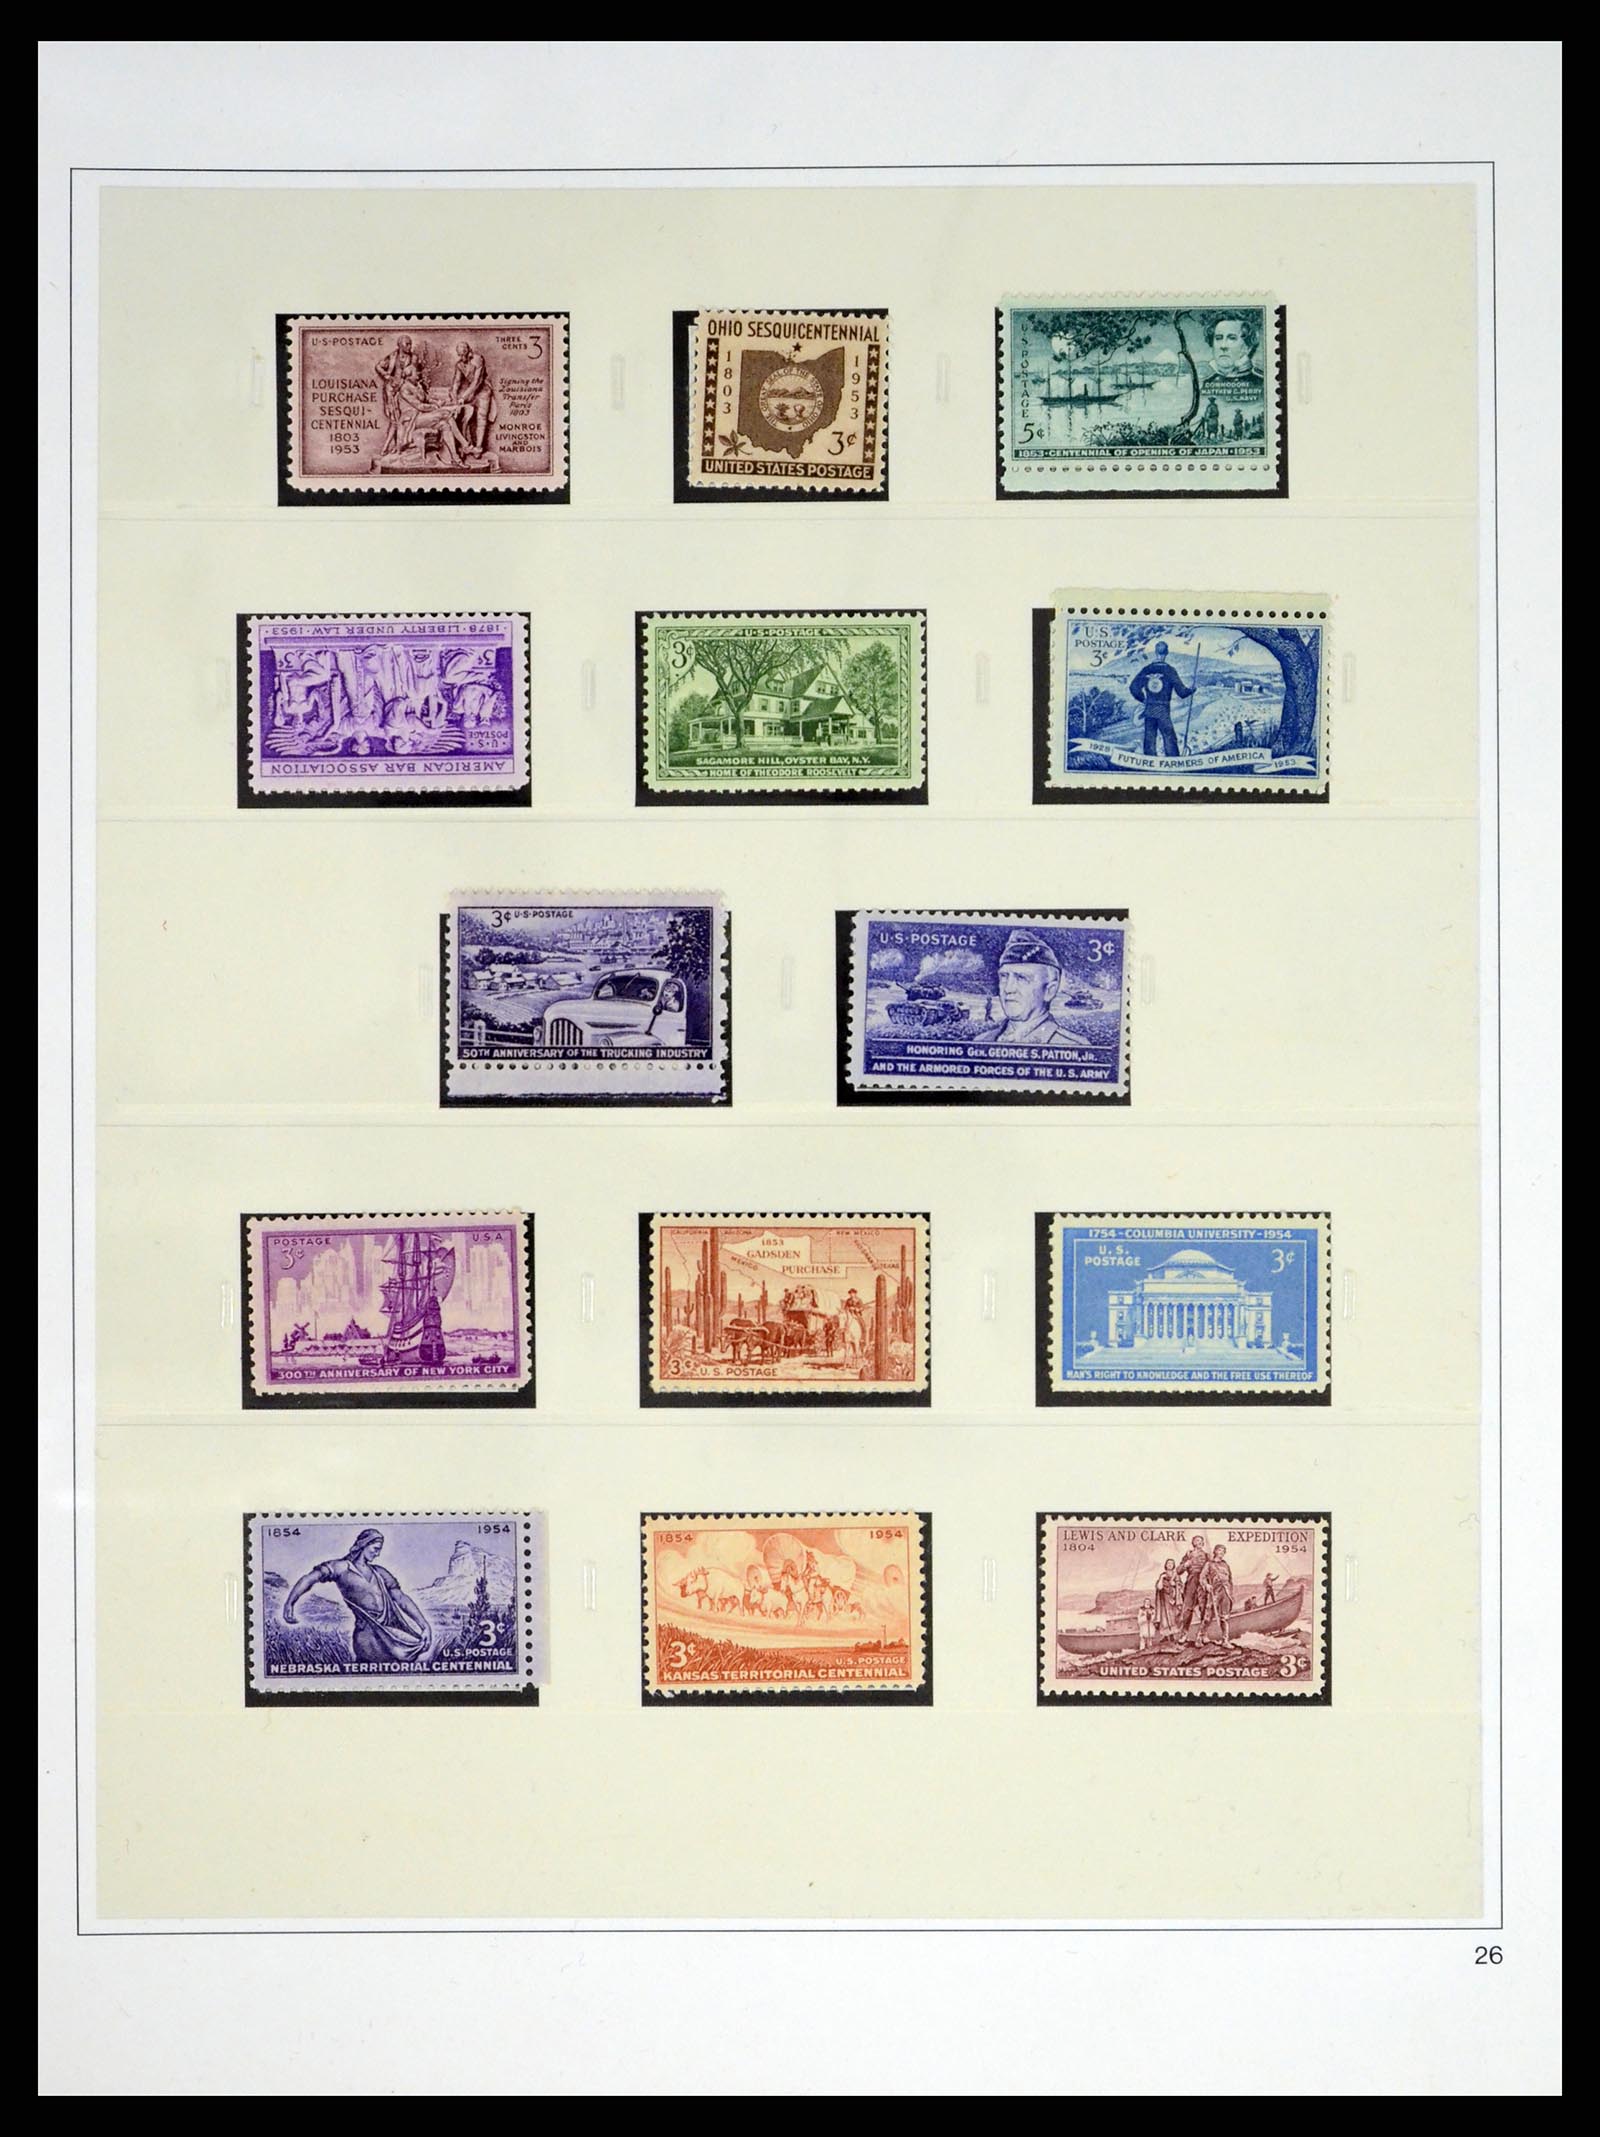 37551 063 - Stamp collection 37551 USA 1851-2001.